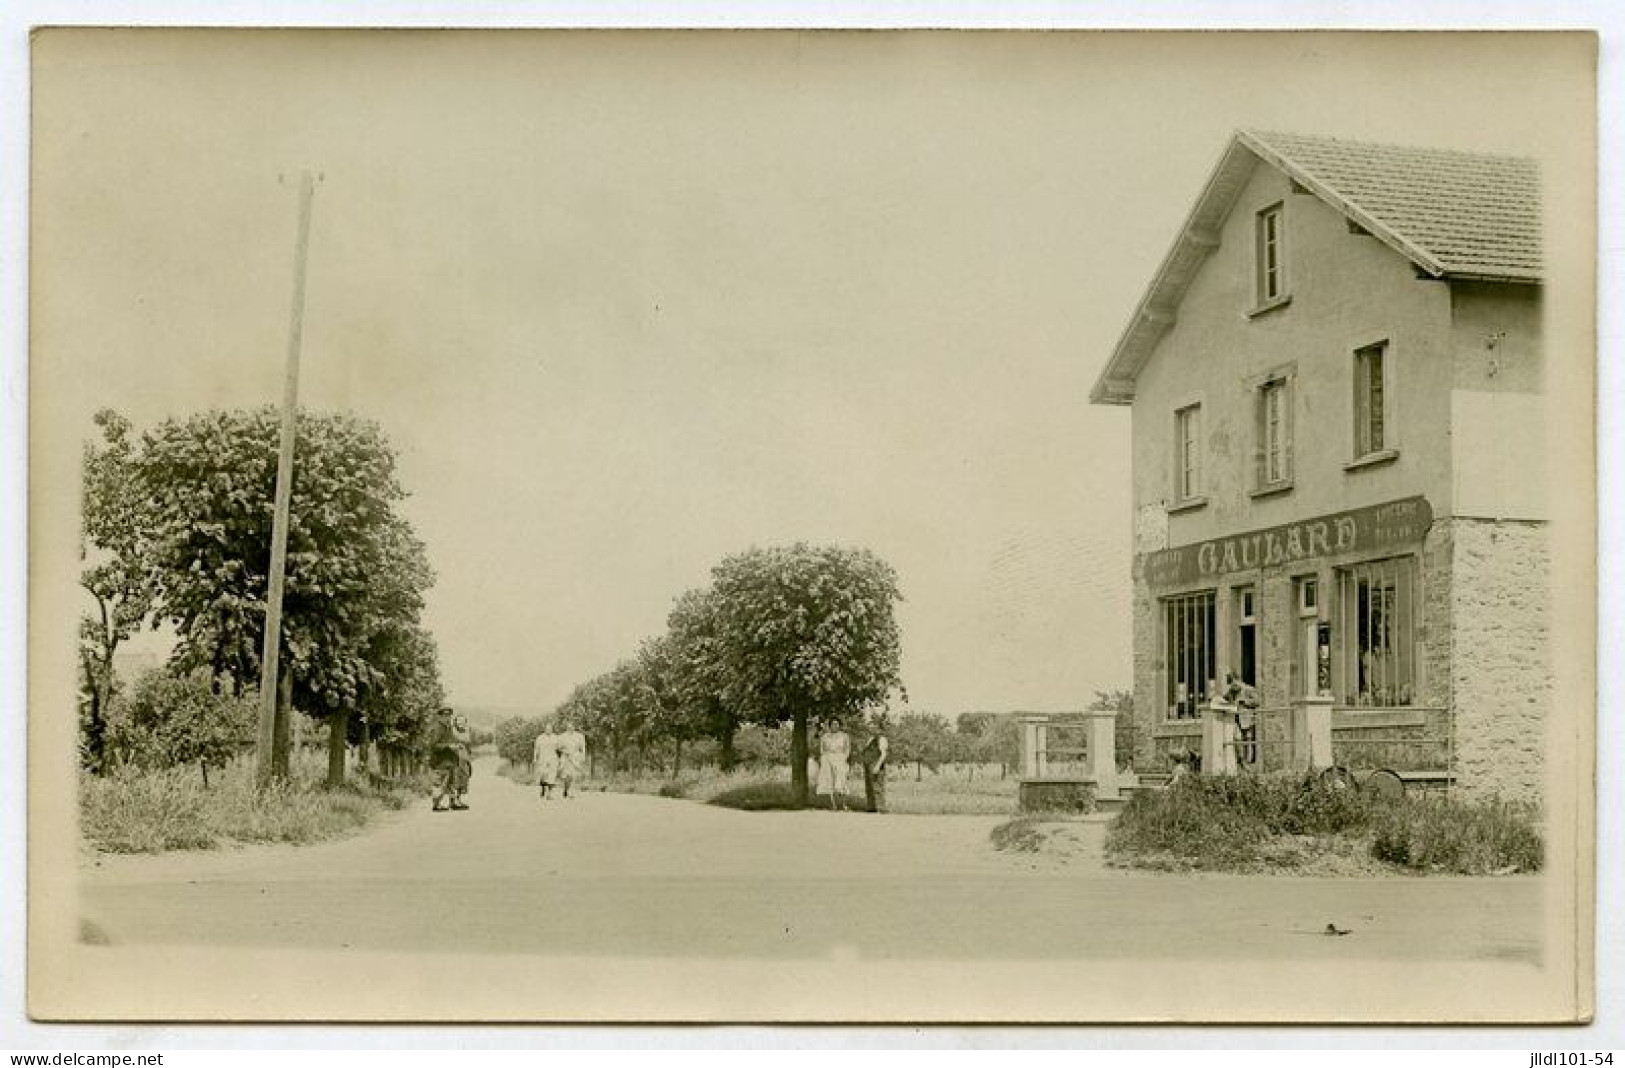 78 - Porcheville, Avenue Louis Tibaldi, épicerie Café Gaulard (lt6) - Porcheville